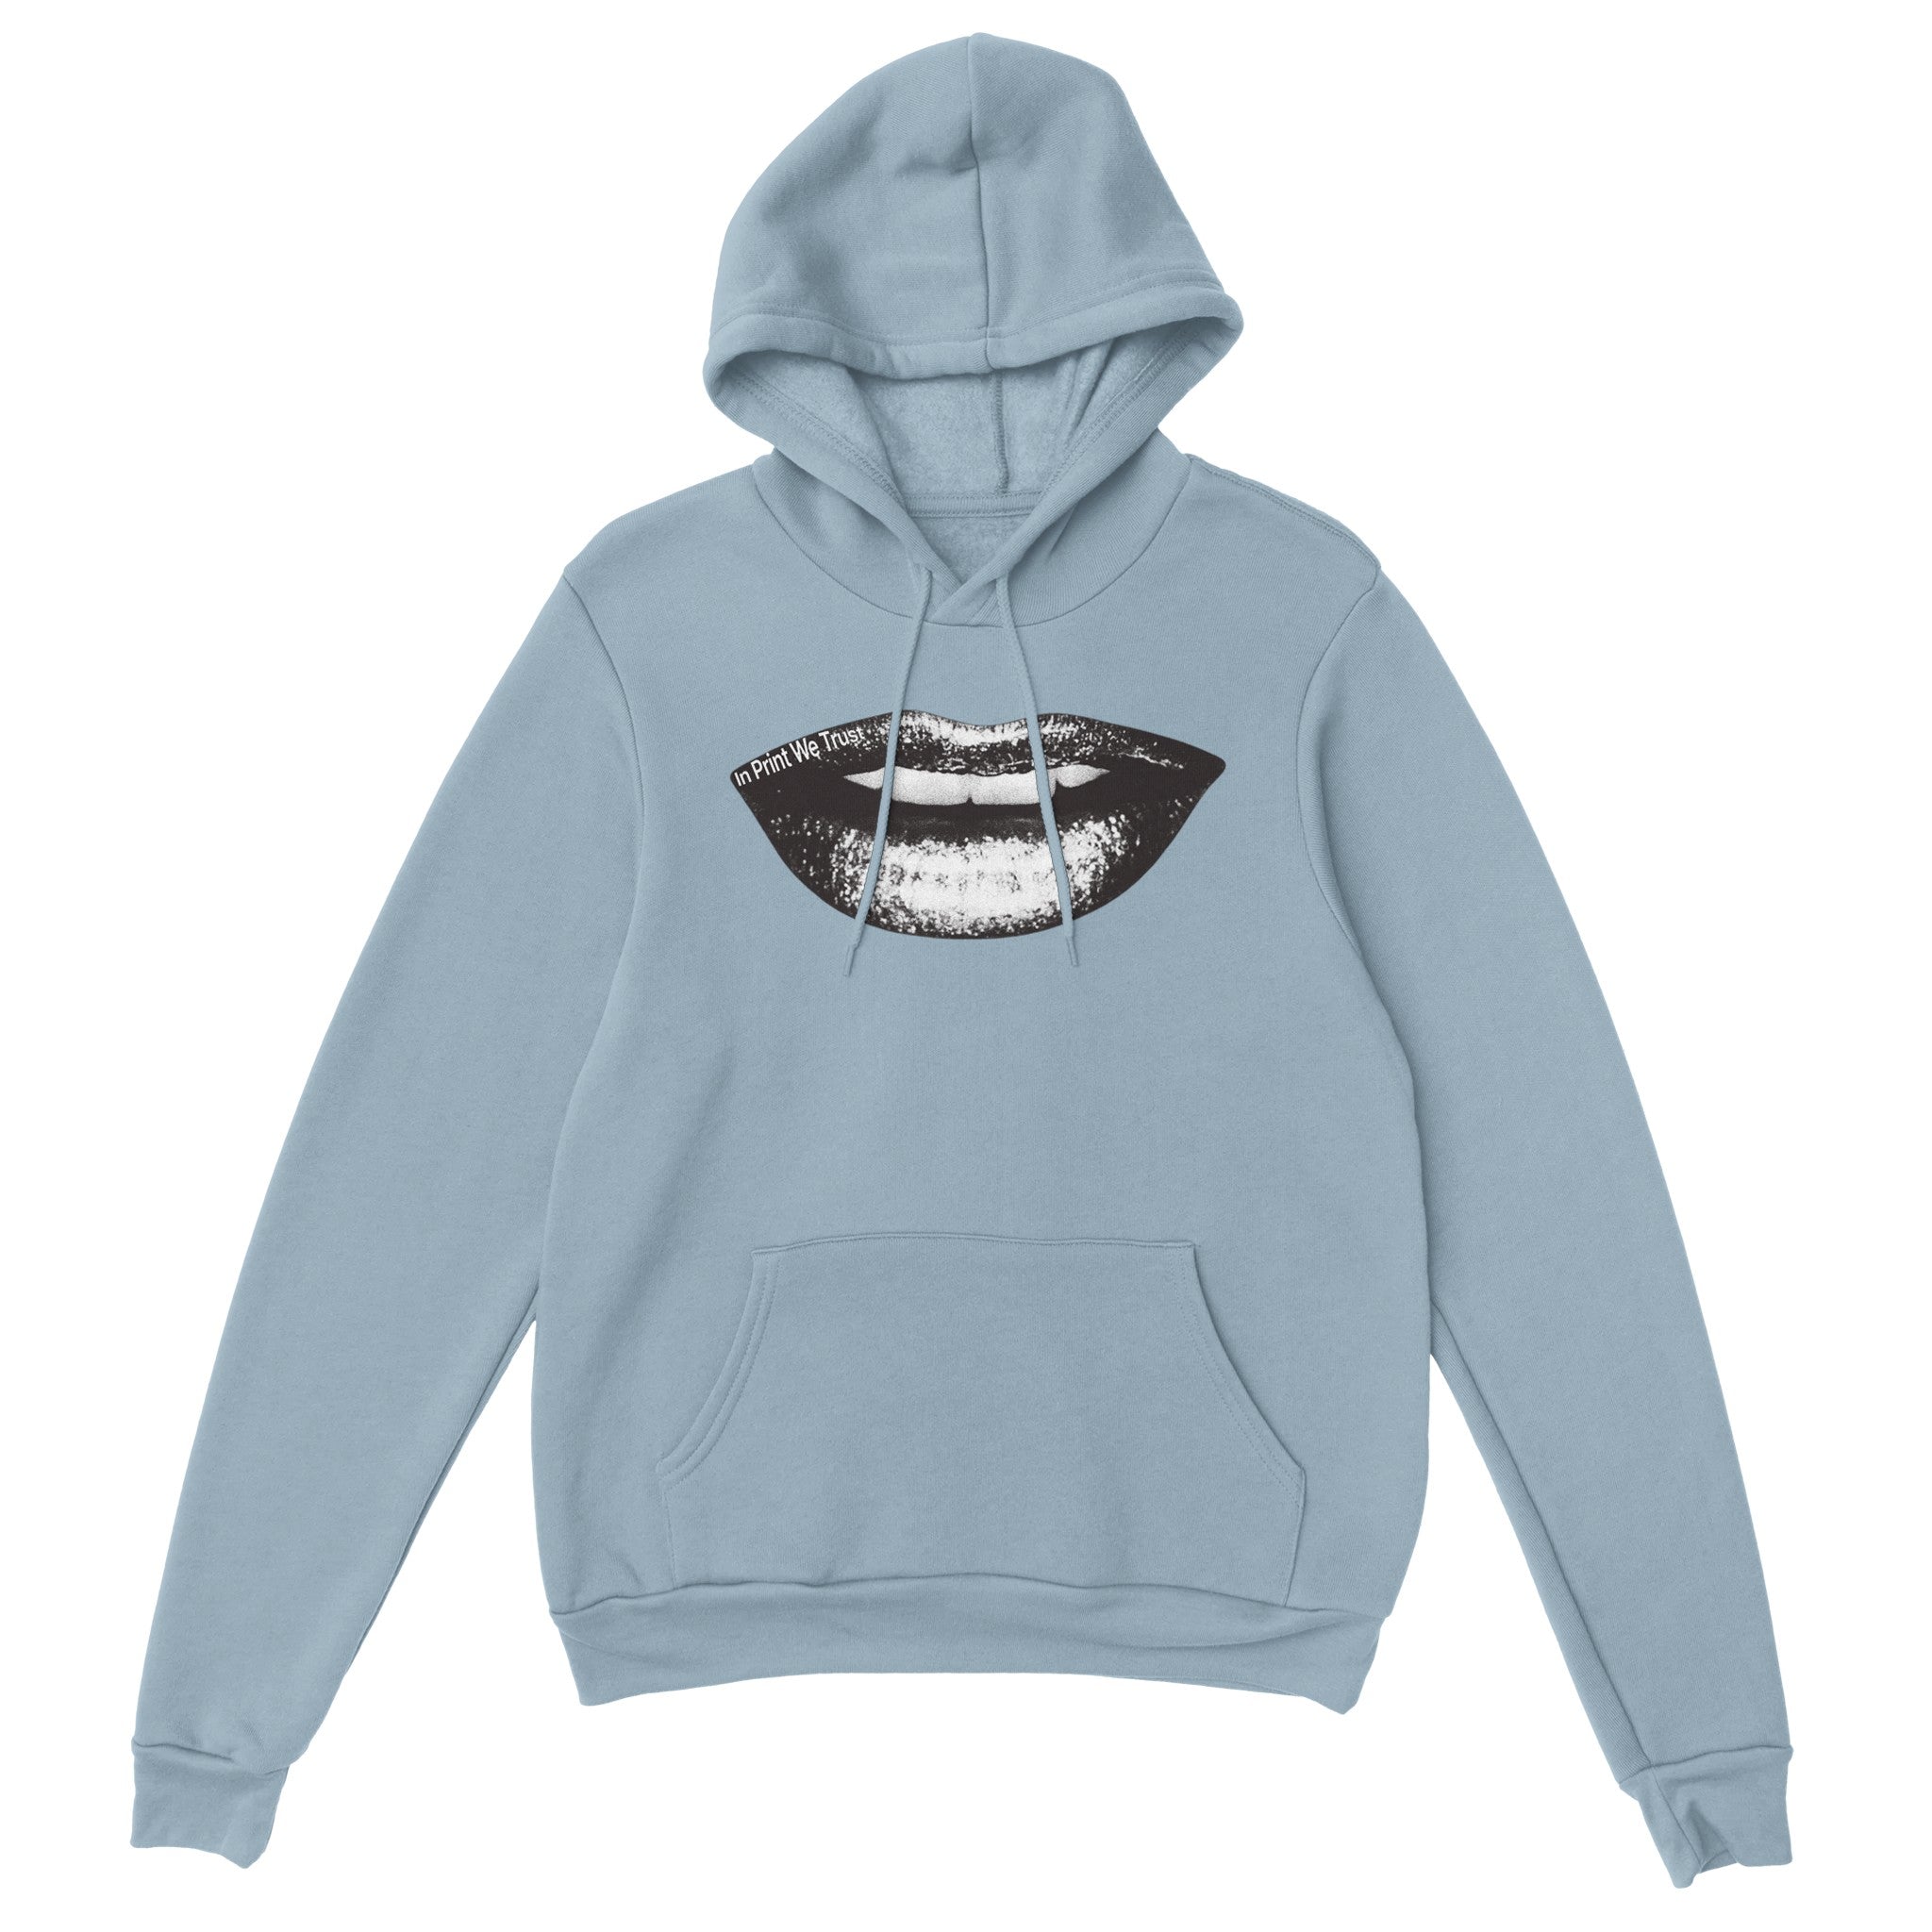 'Smile' hoodie - In Print We Trust